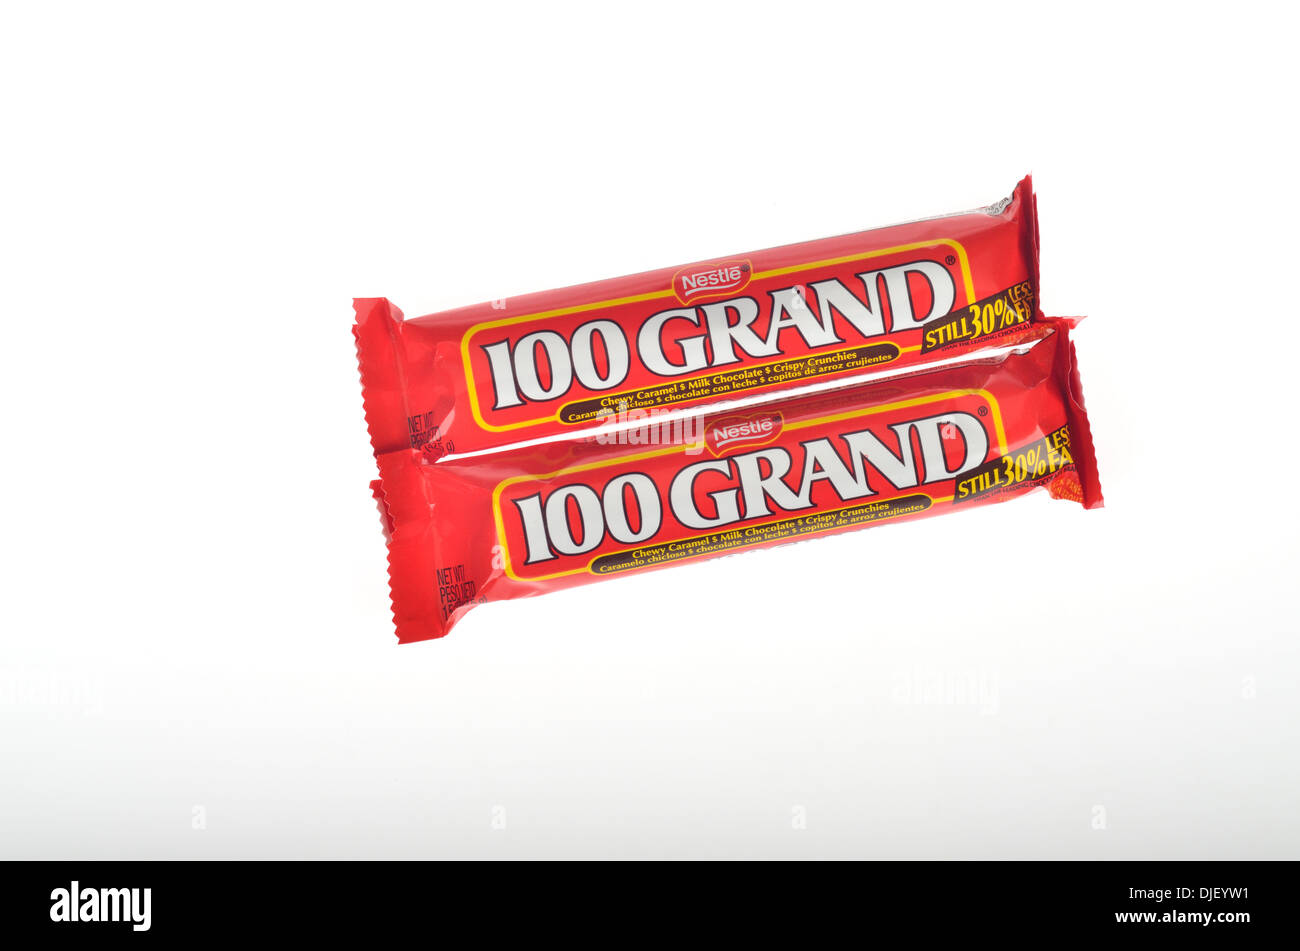 10 grand candy bar